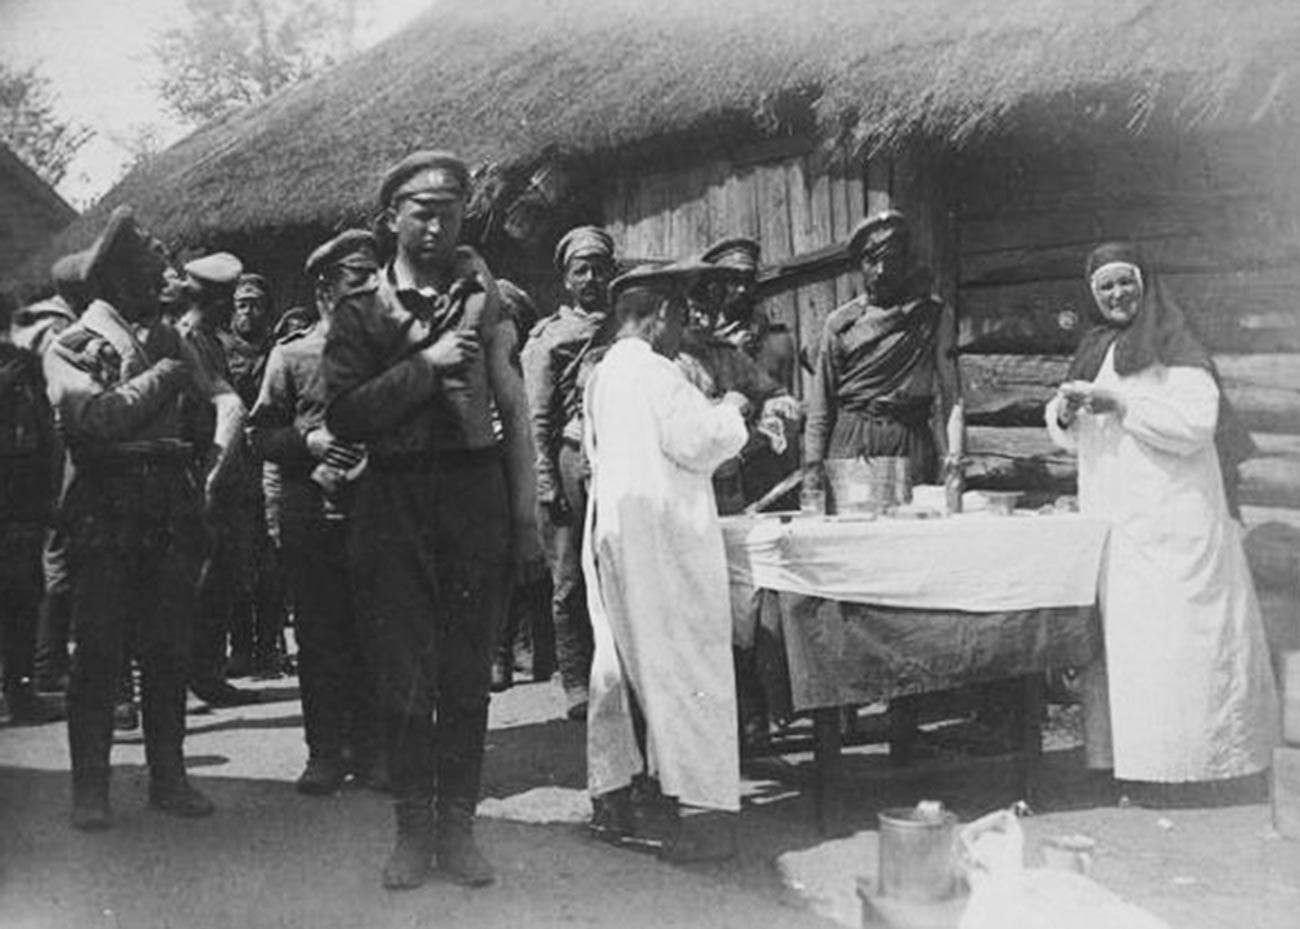 Soldats vaccinés contre le choléra pendant la Première Guerre mondiale, 1914
